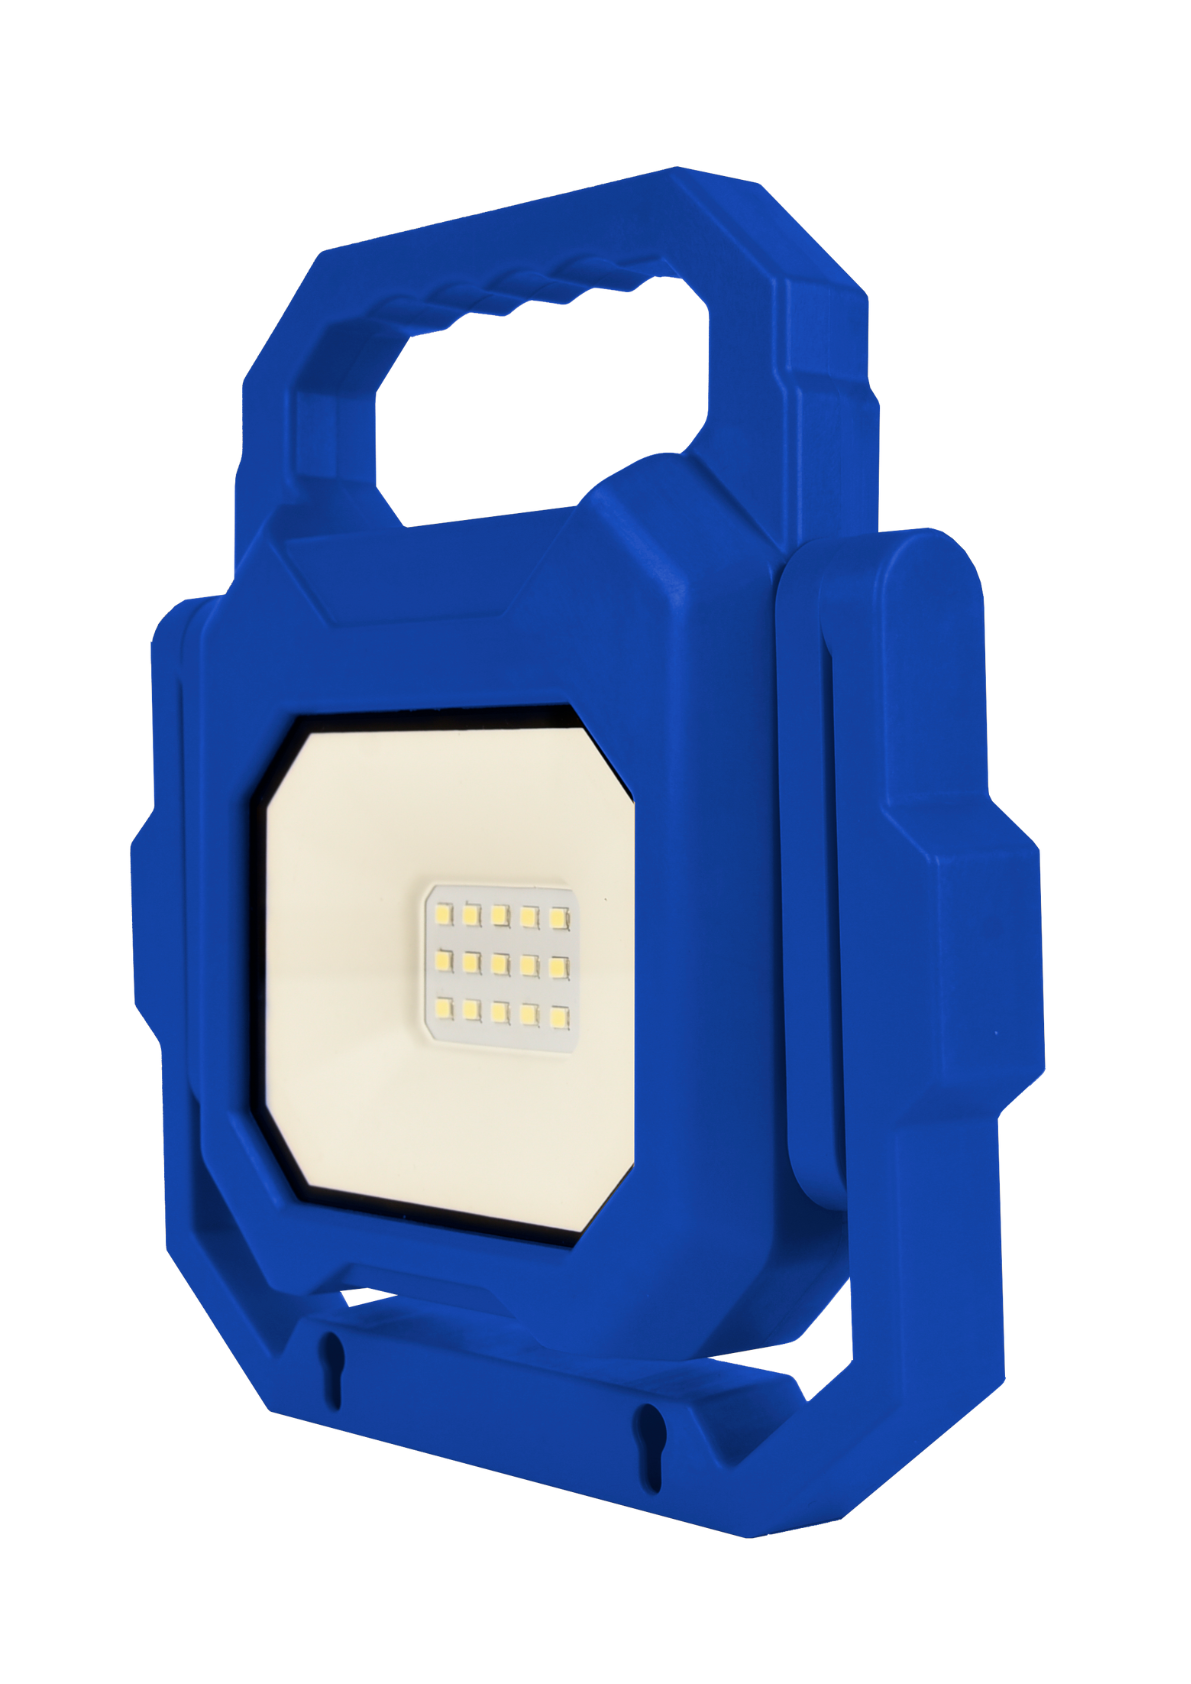 LED Baustrahler mit Akku, faltbar, 6 W, 800 lm, 4000 K (neutralweiß), IP54, 7 Stunden Lichtzeit, USB In- und Output, flexible Arbeitsleuchte